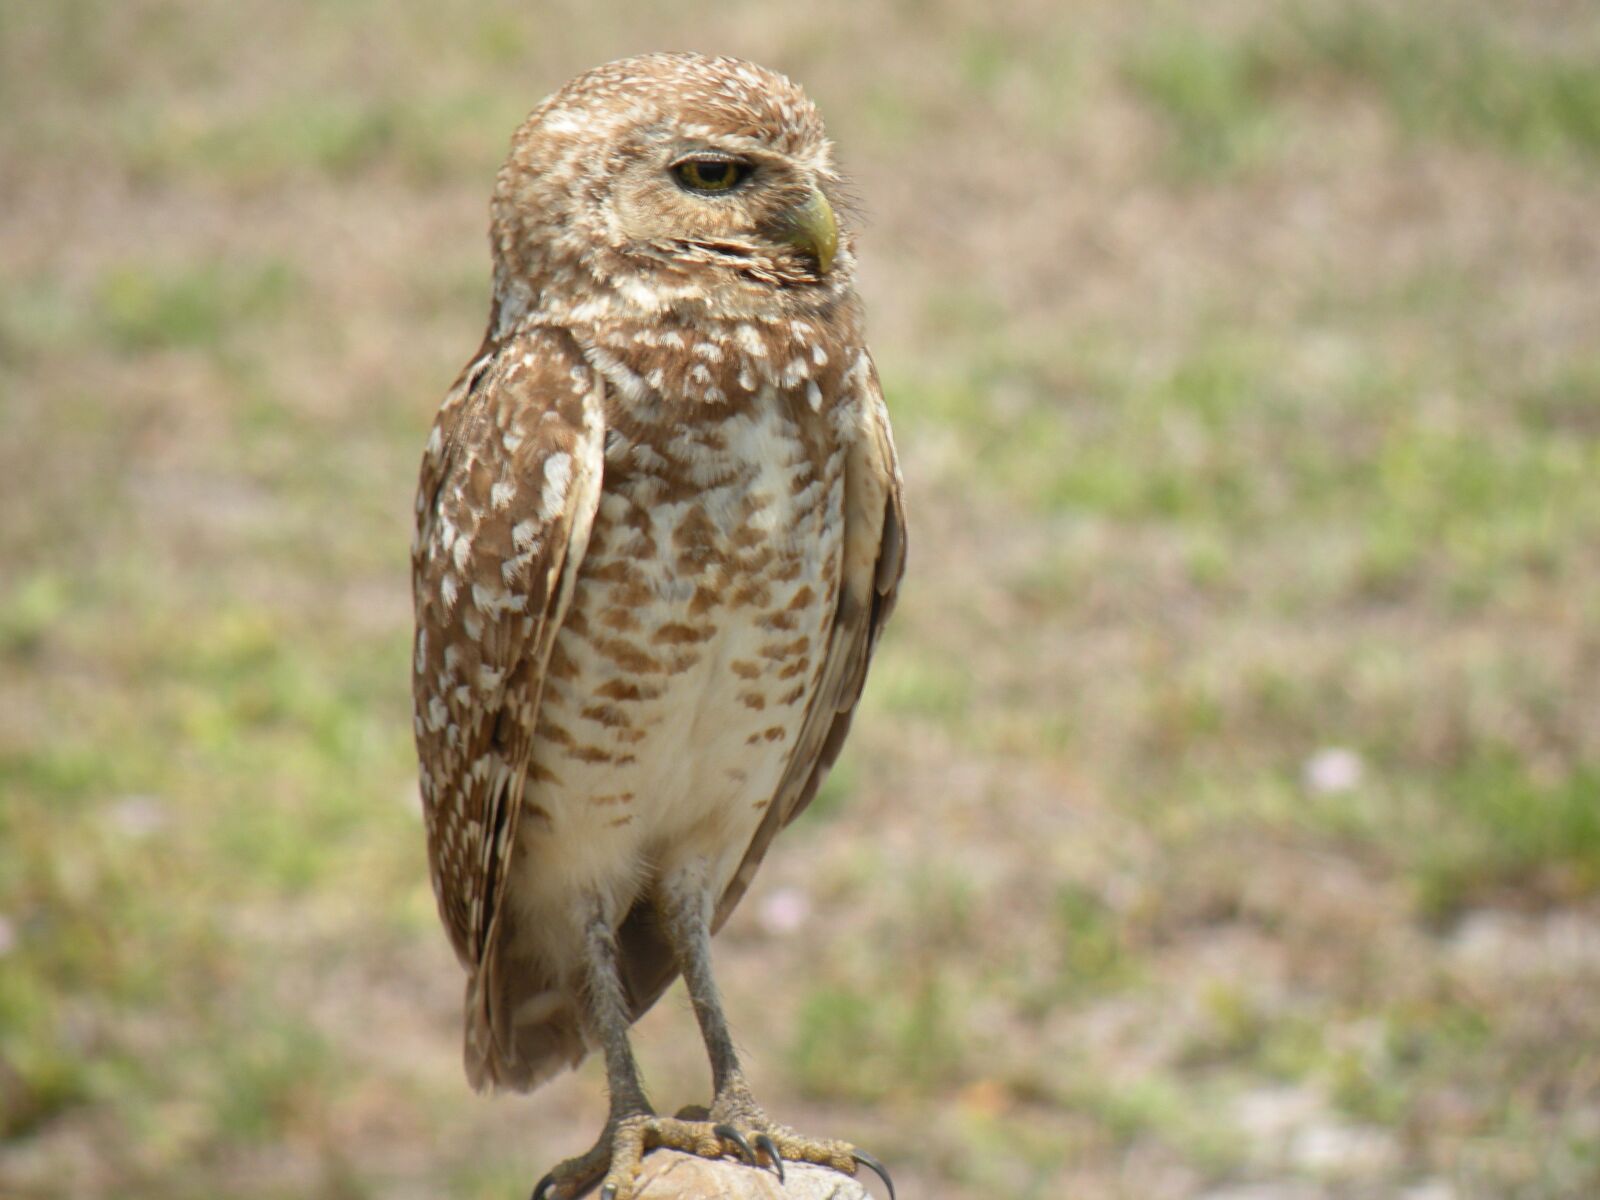 Nikon Coolpix P80 sample photo. Burrowing owl, bird, nature photography